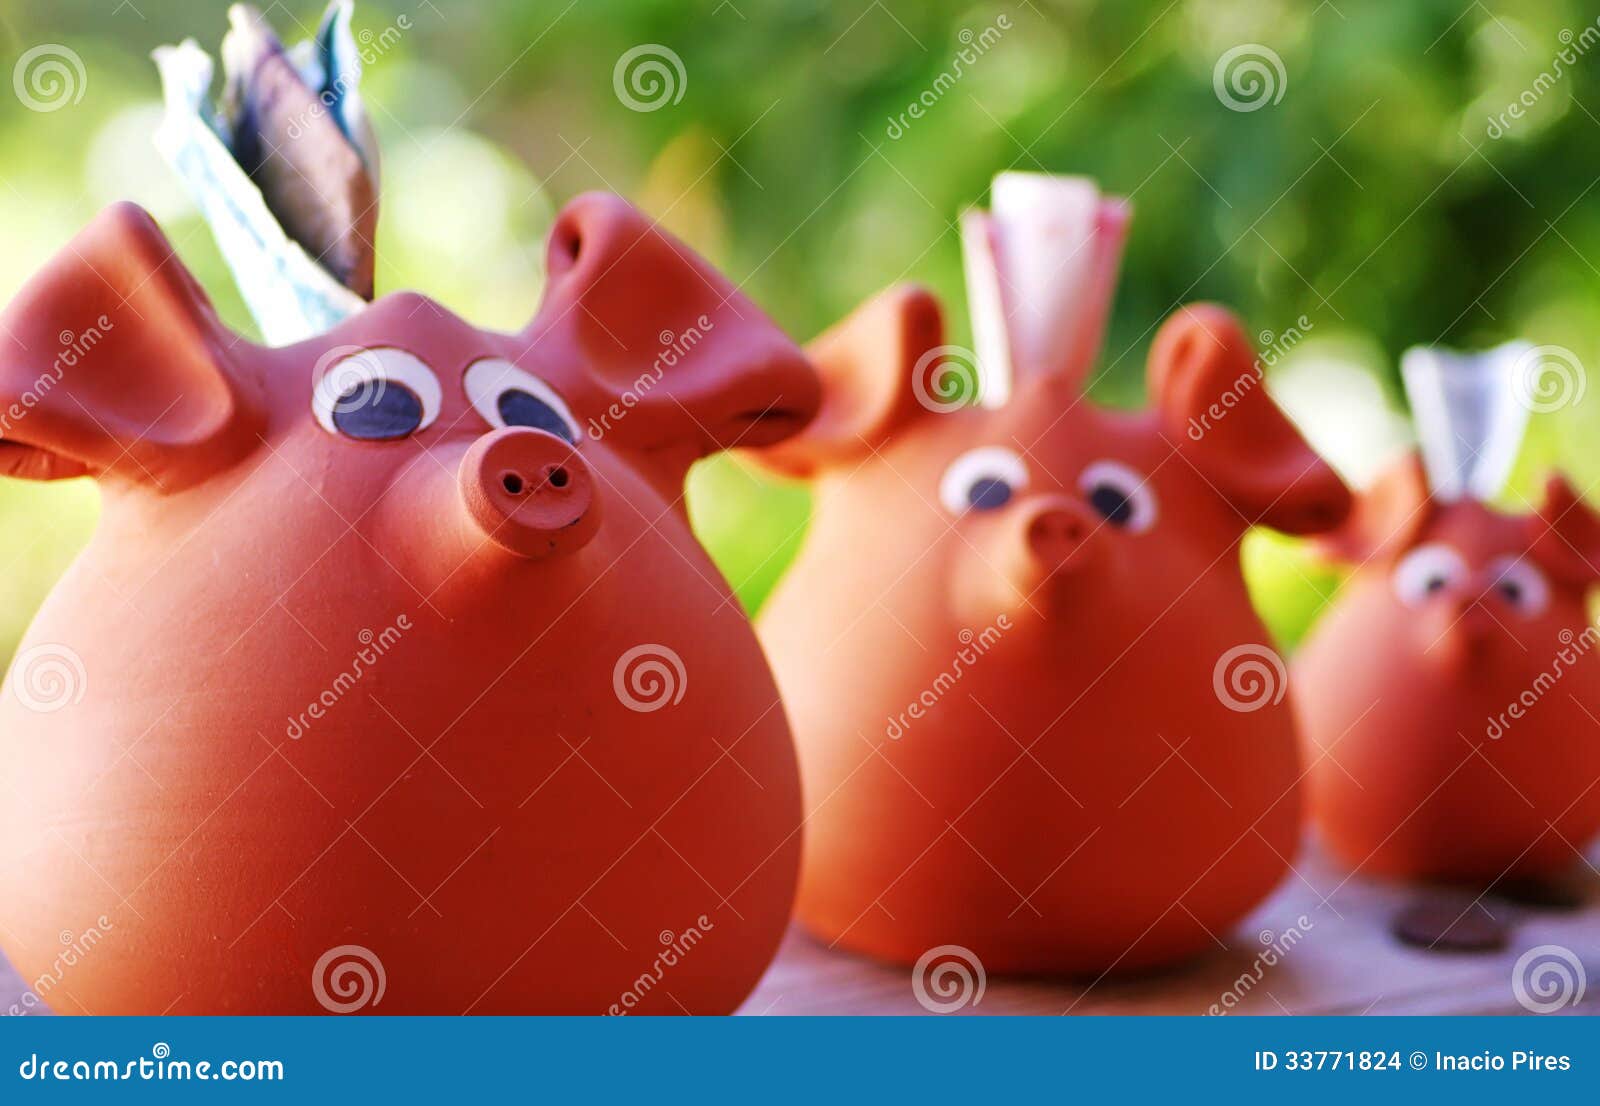 three ceramic piggy